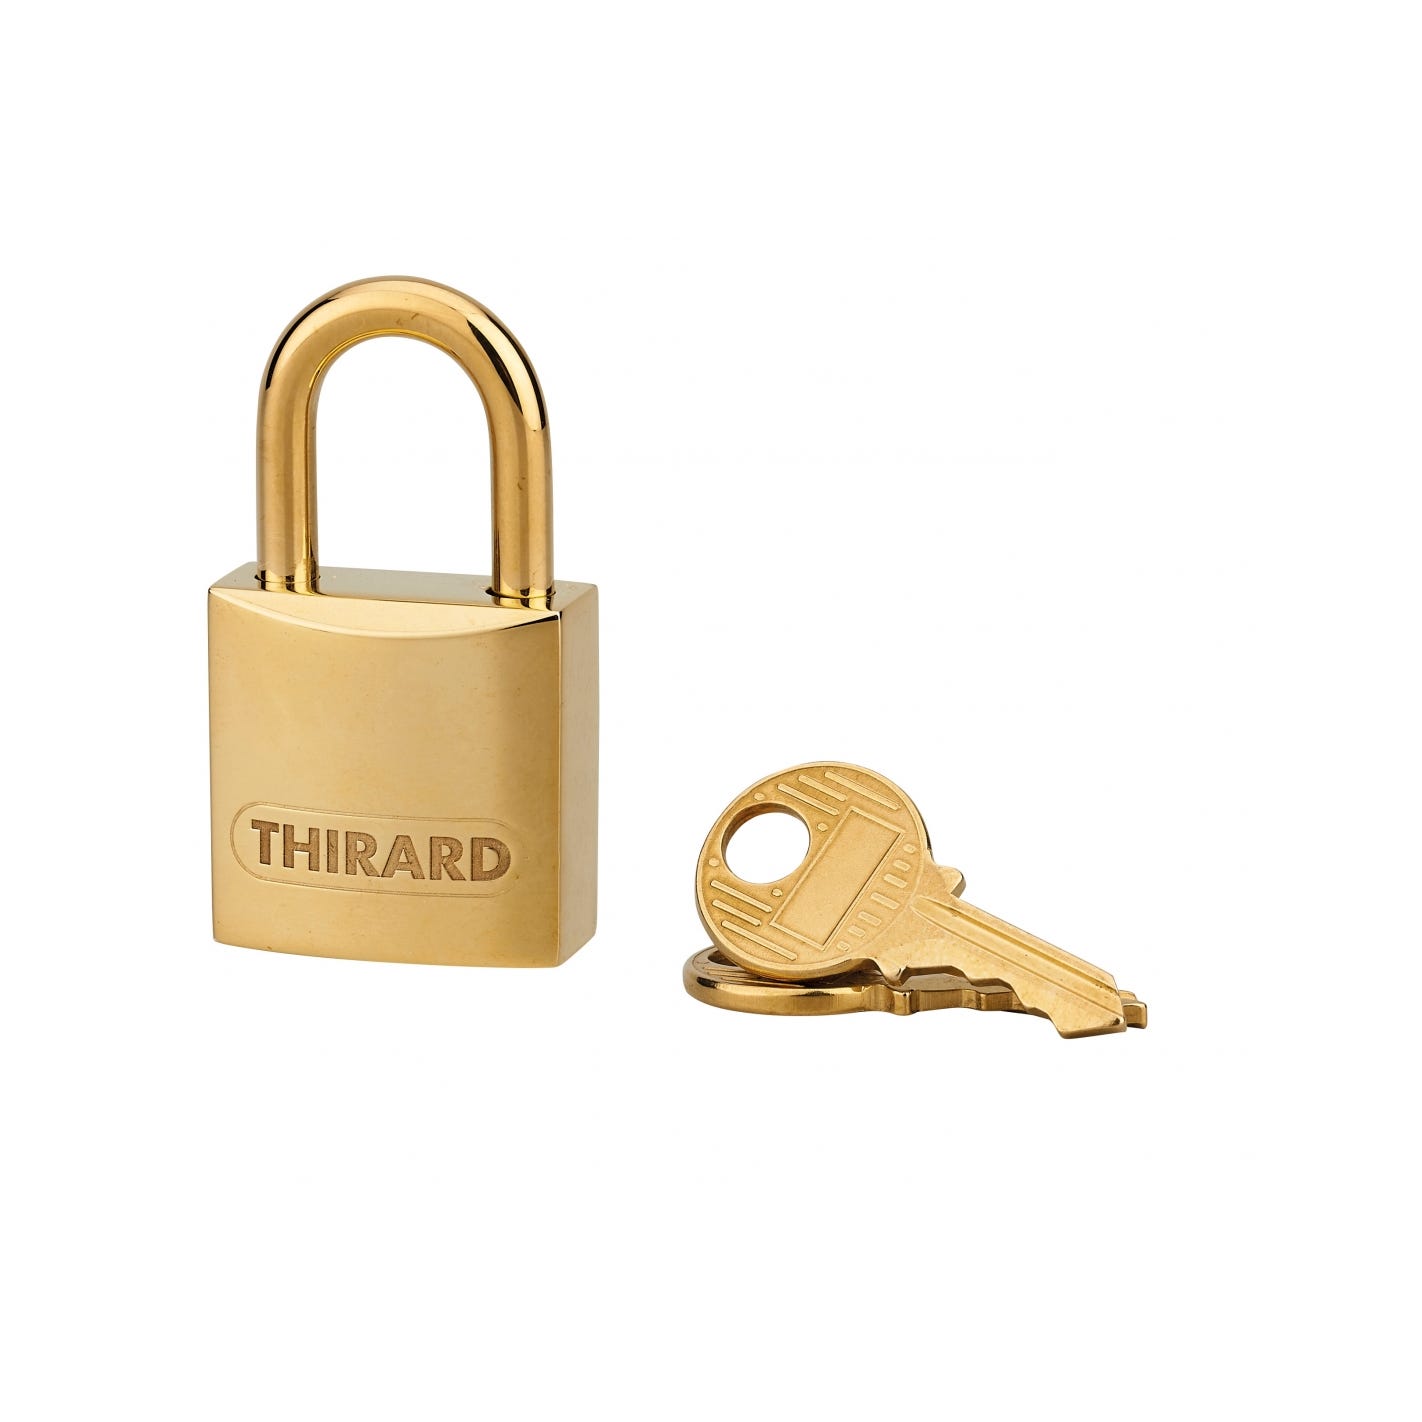 THIRARD - Cadenas à clé Luxe, laiton, intérieur, anse laiton, 20mm, laiton poli, 2 clés 2